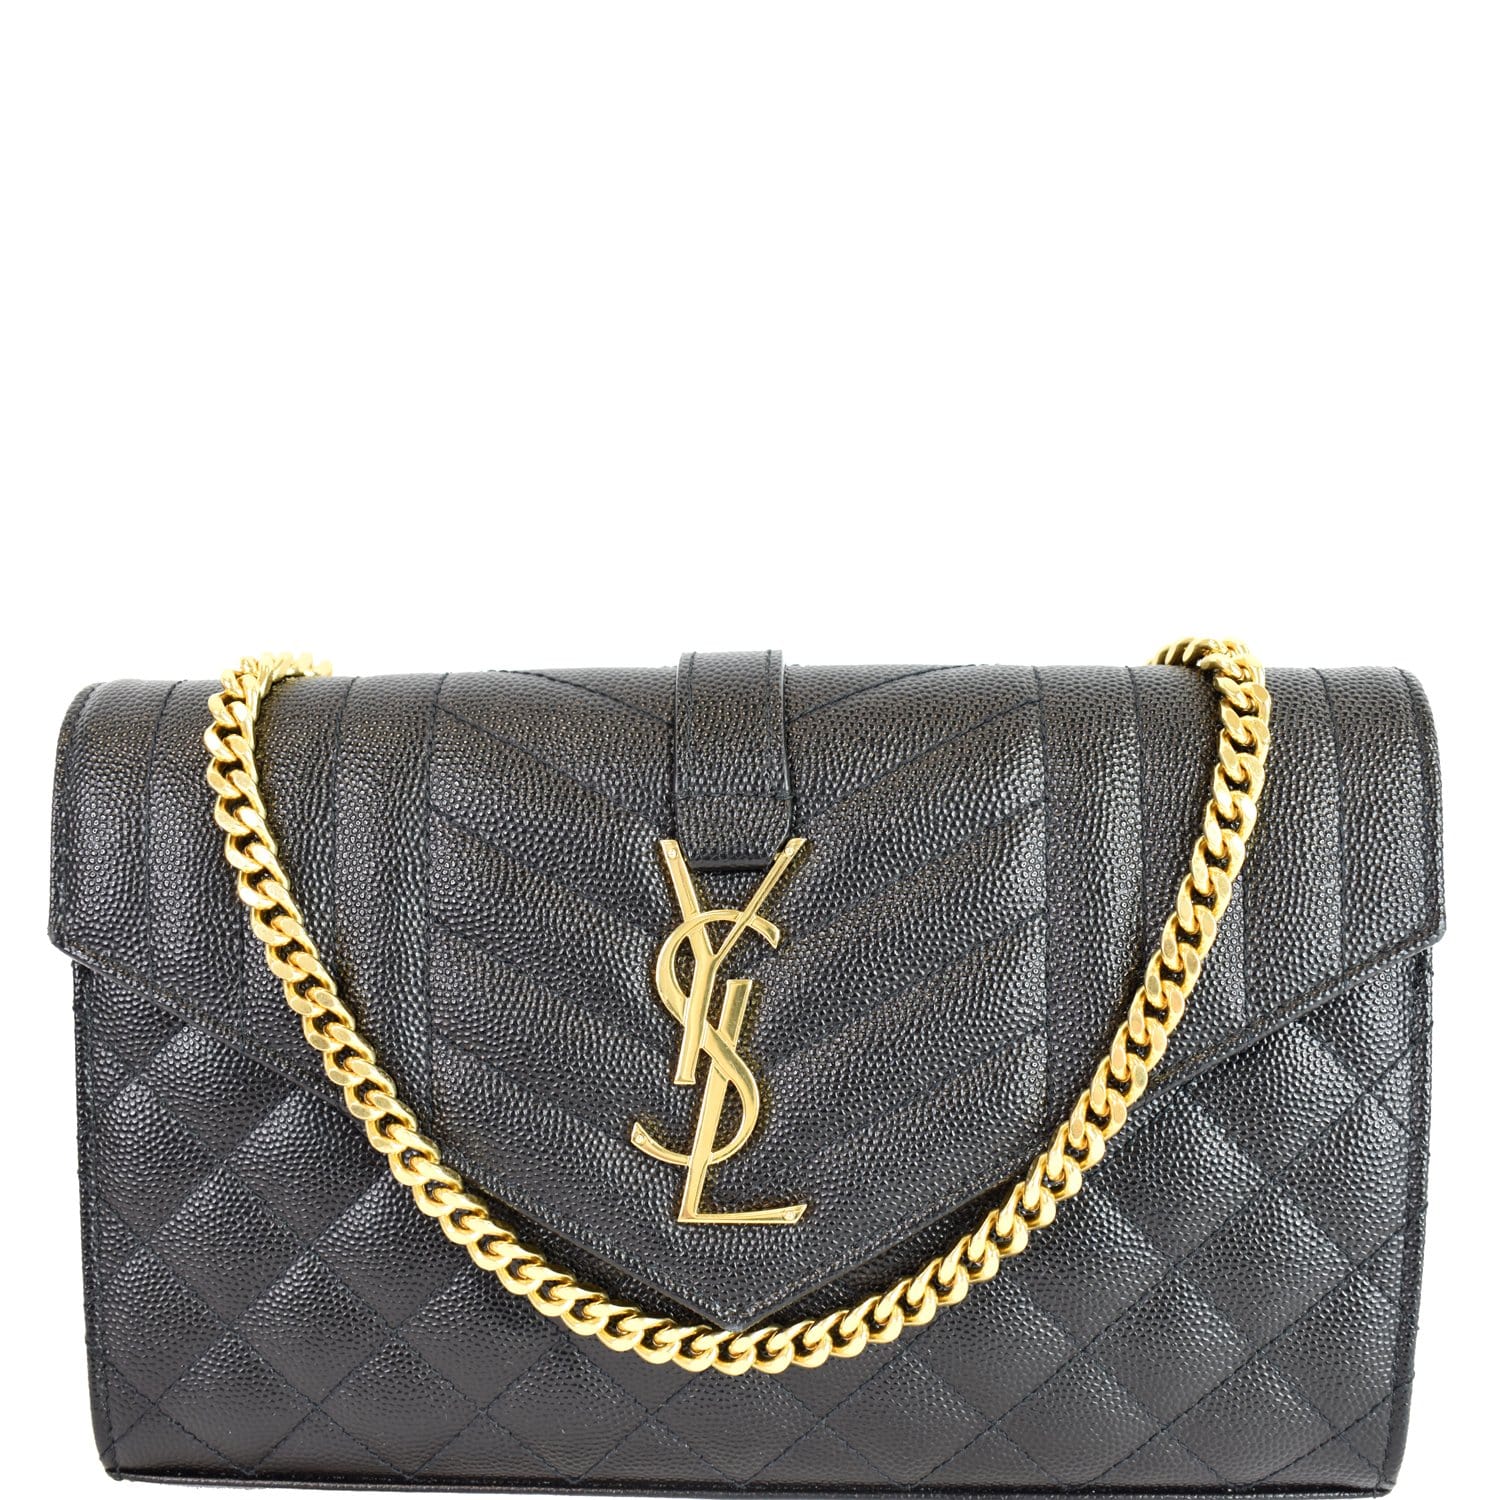 Envelope leather handbag Saint Laurent Black in Leather - 34307611